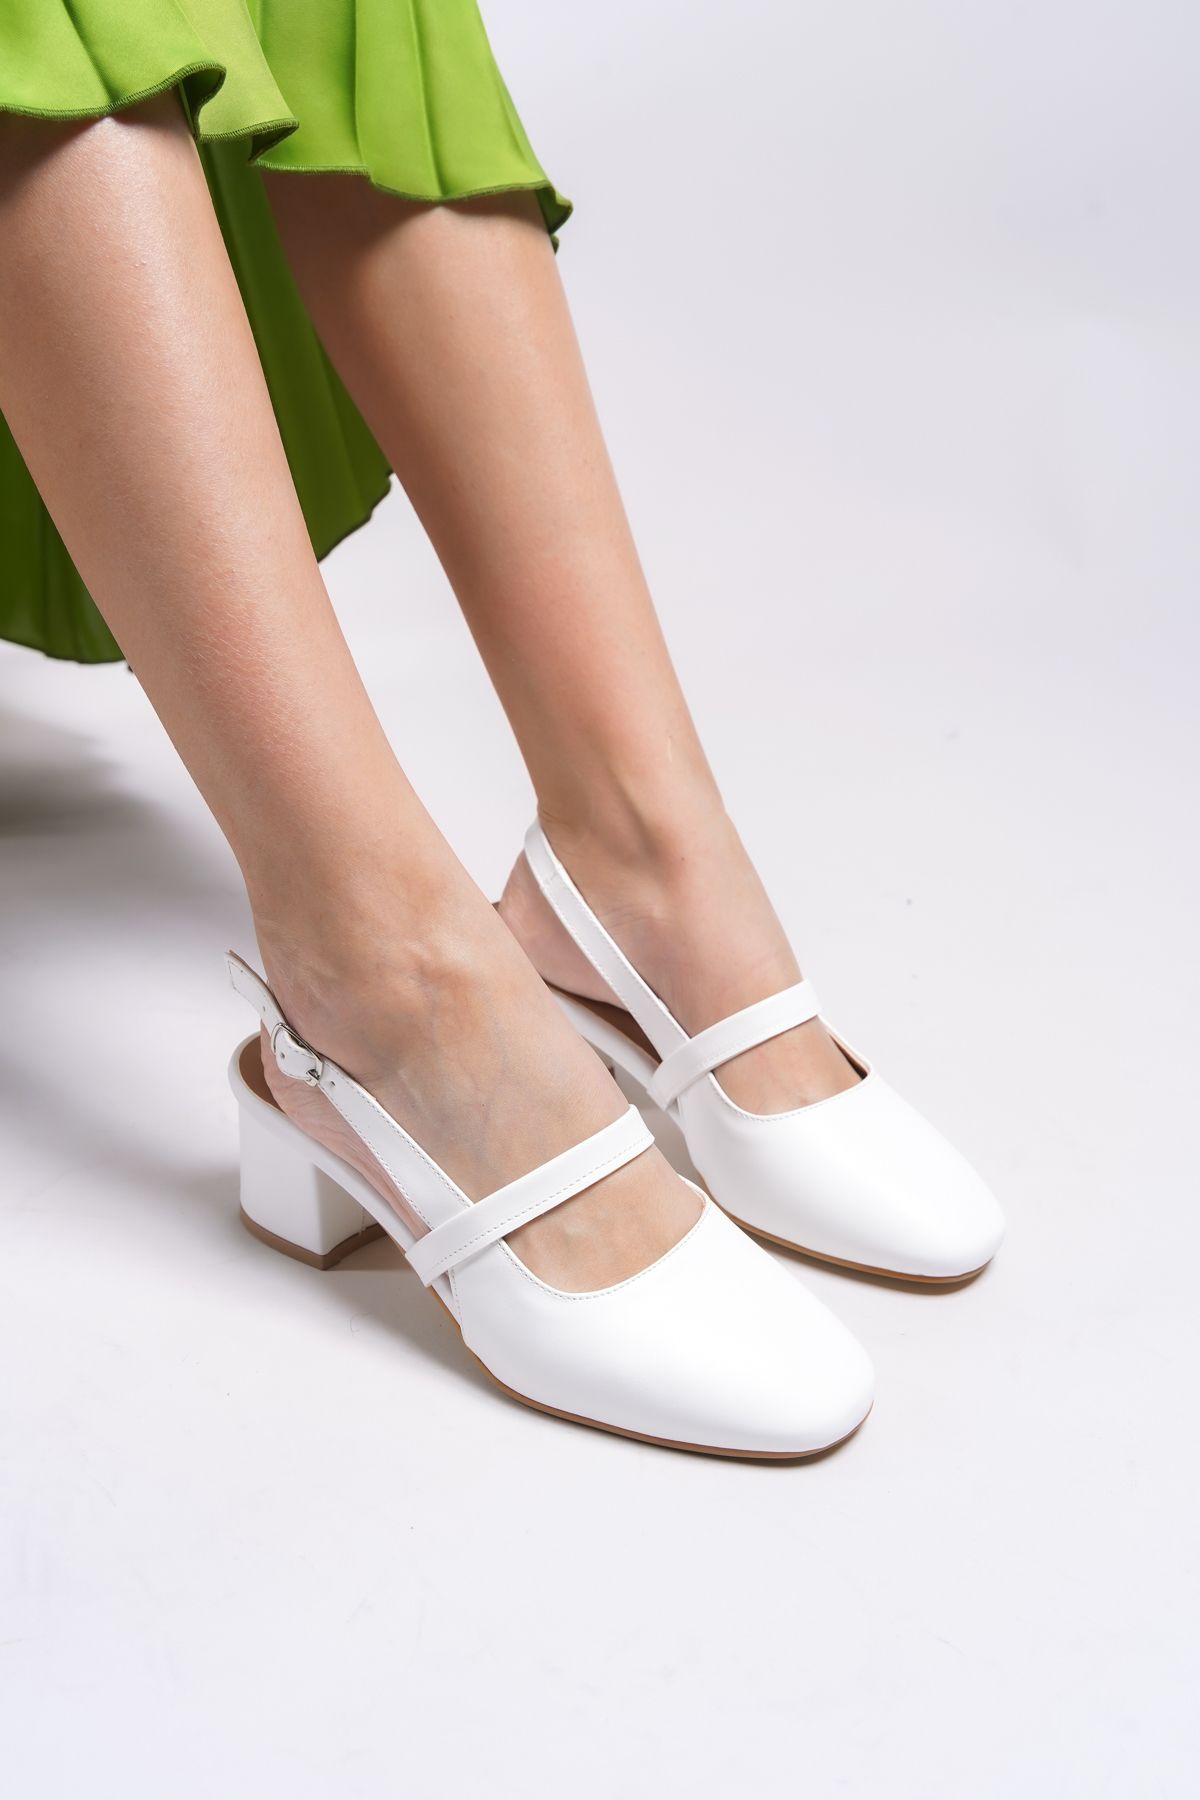 Riccon Linnorel Kadın Topuklu Ayakkabı 0012109 Beyaz Cilt